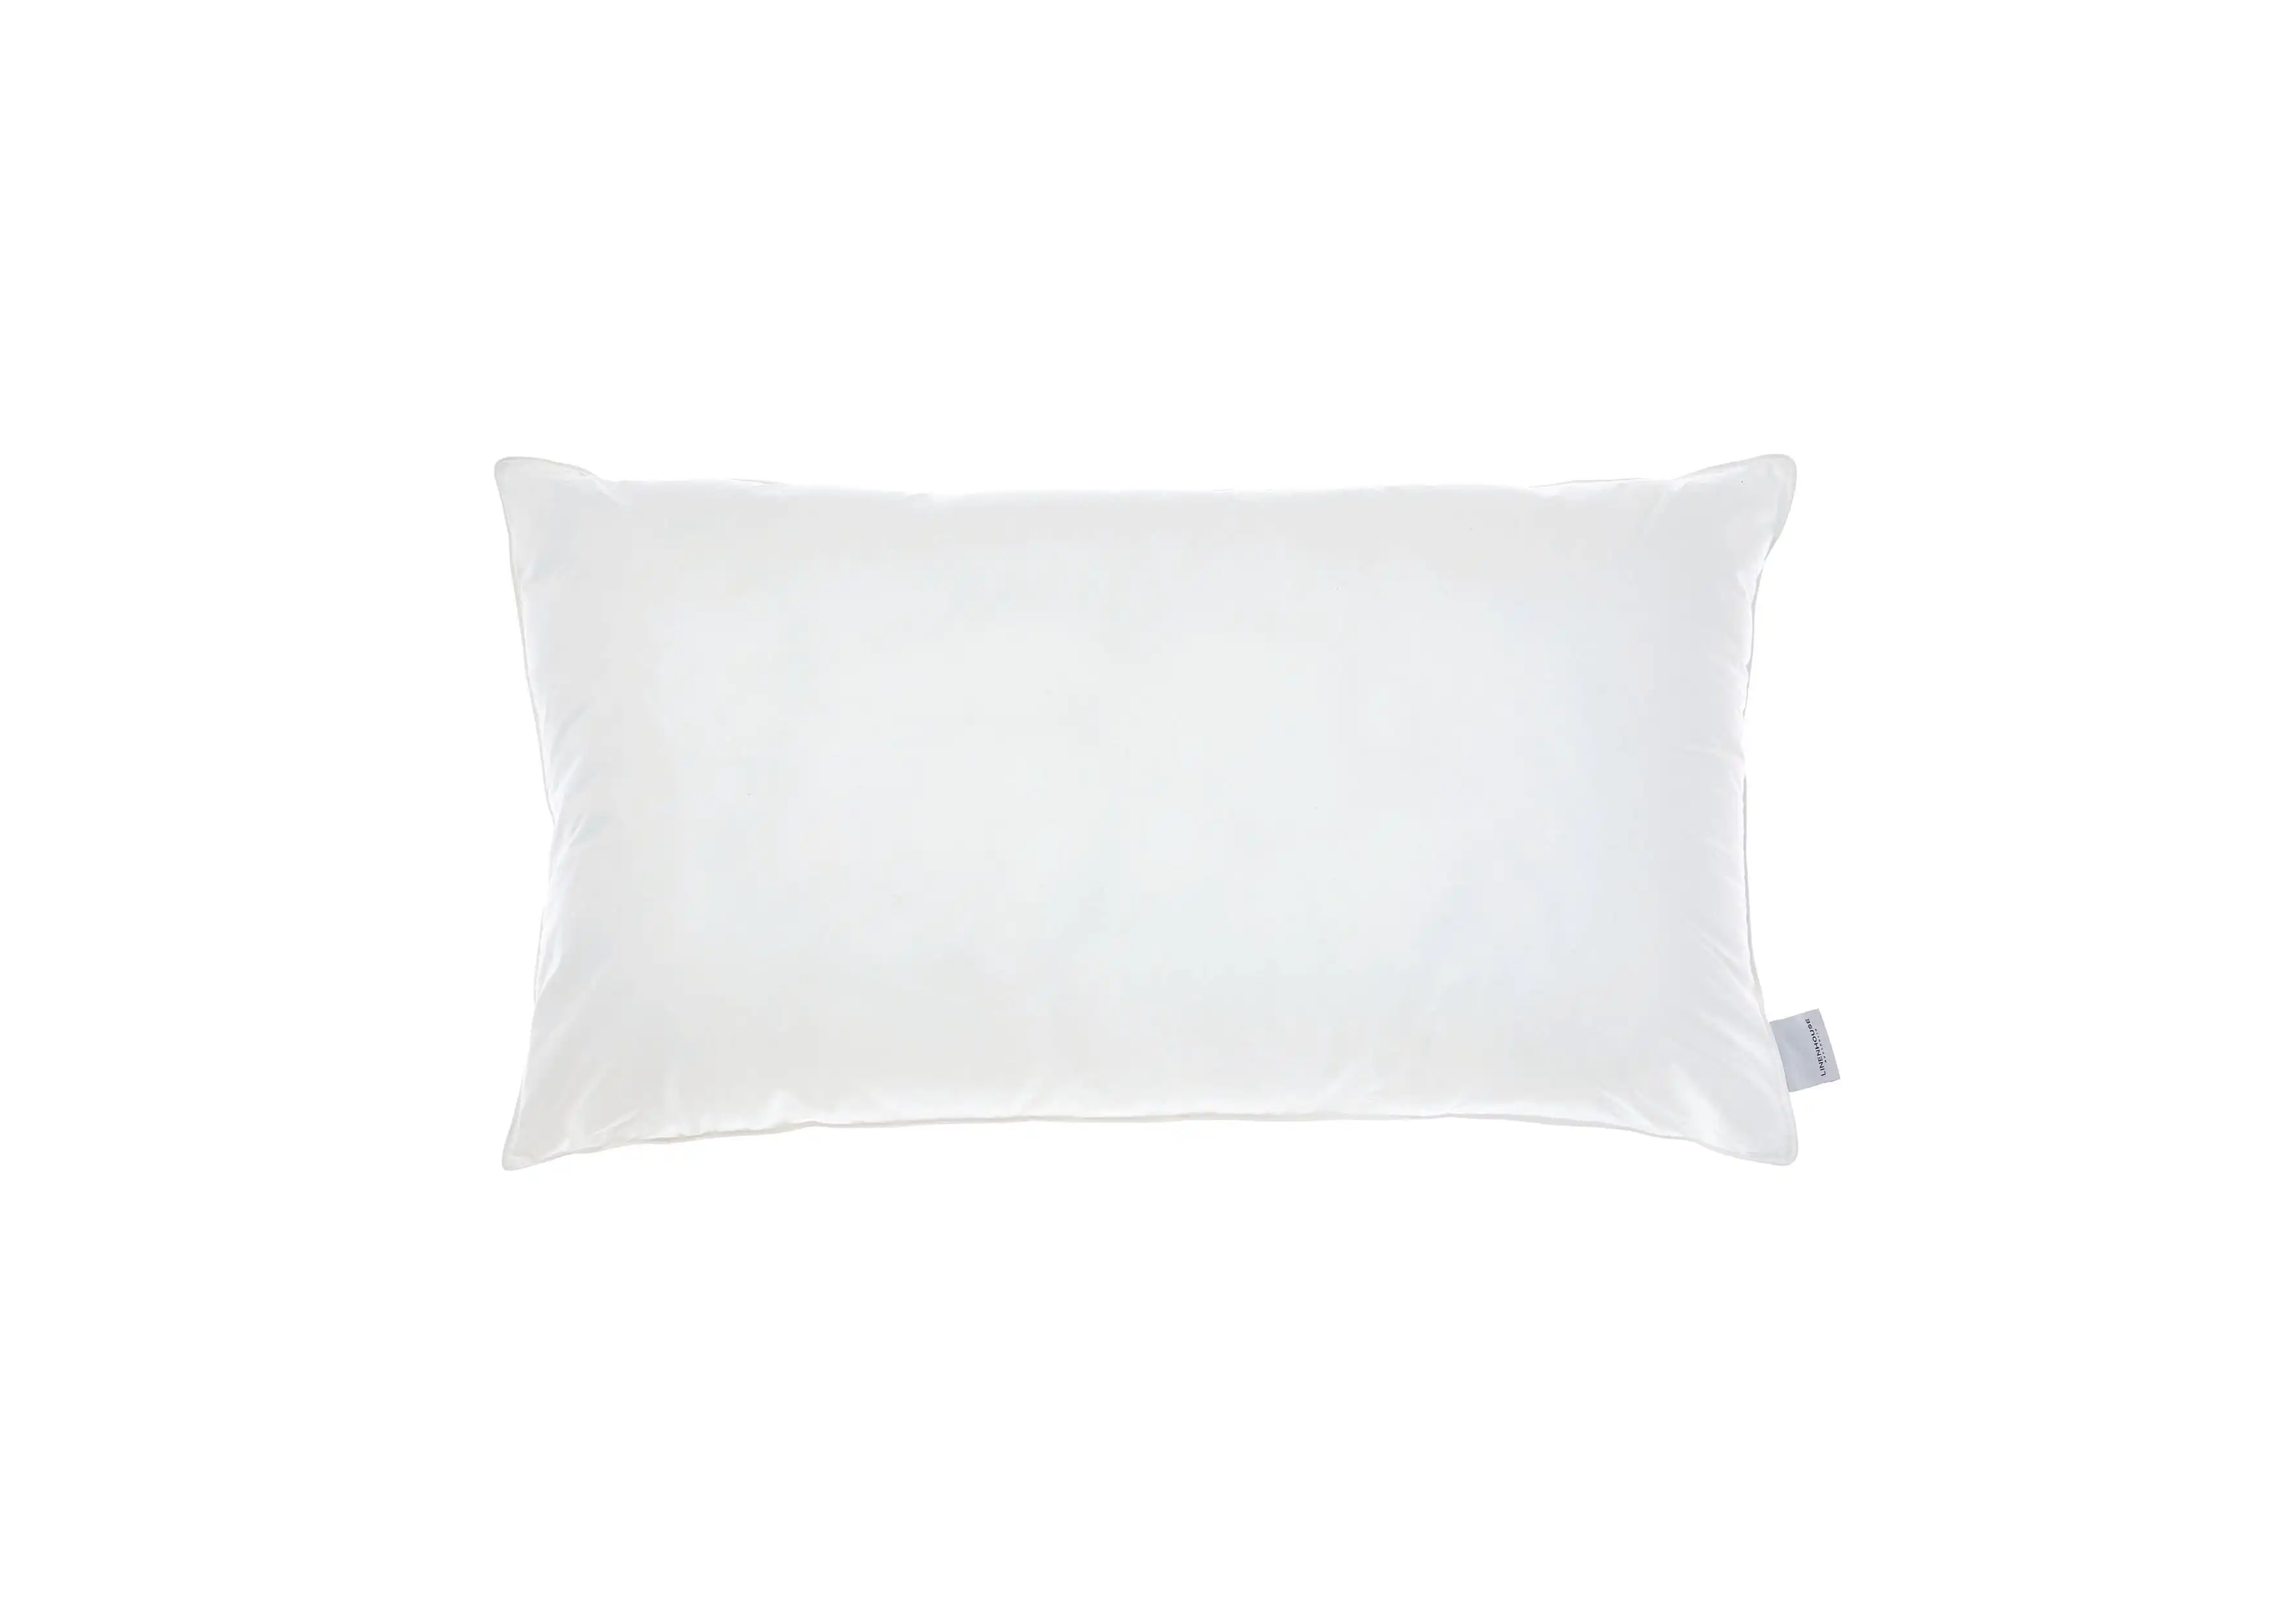 Linen House All-Seasons King Pillow - 1200 GSM